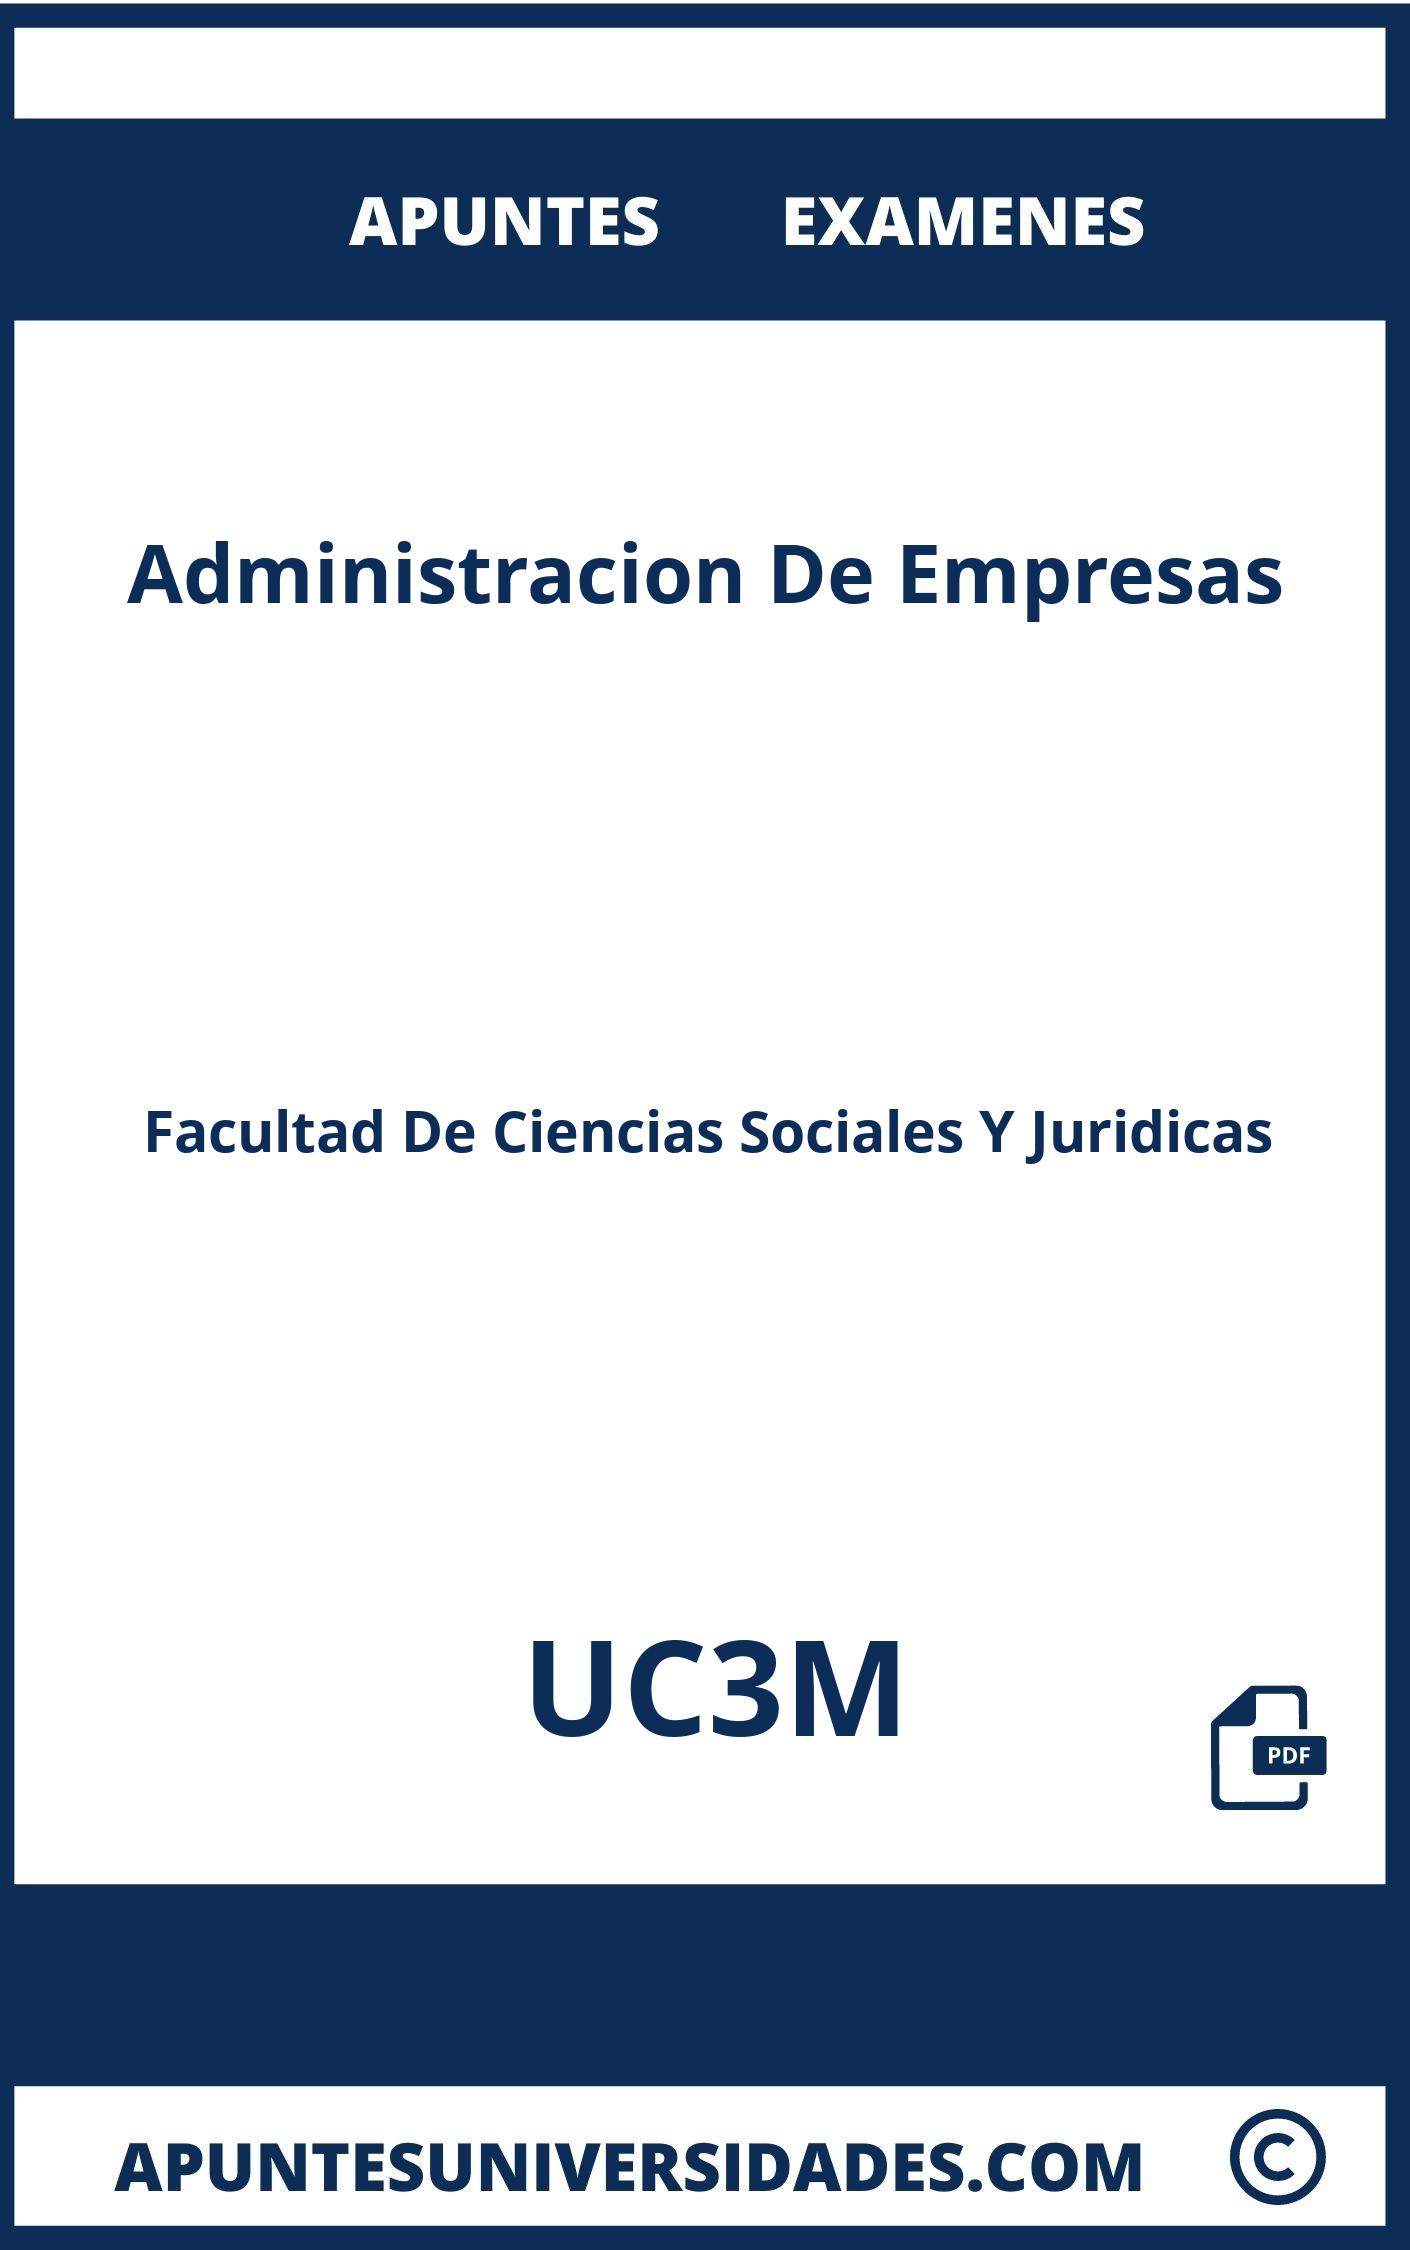 Apuntes Administracion De Empresas UC3M y Examenes